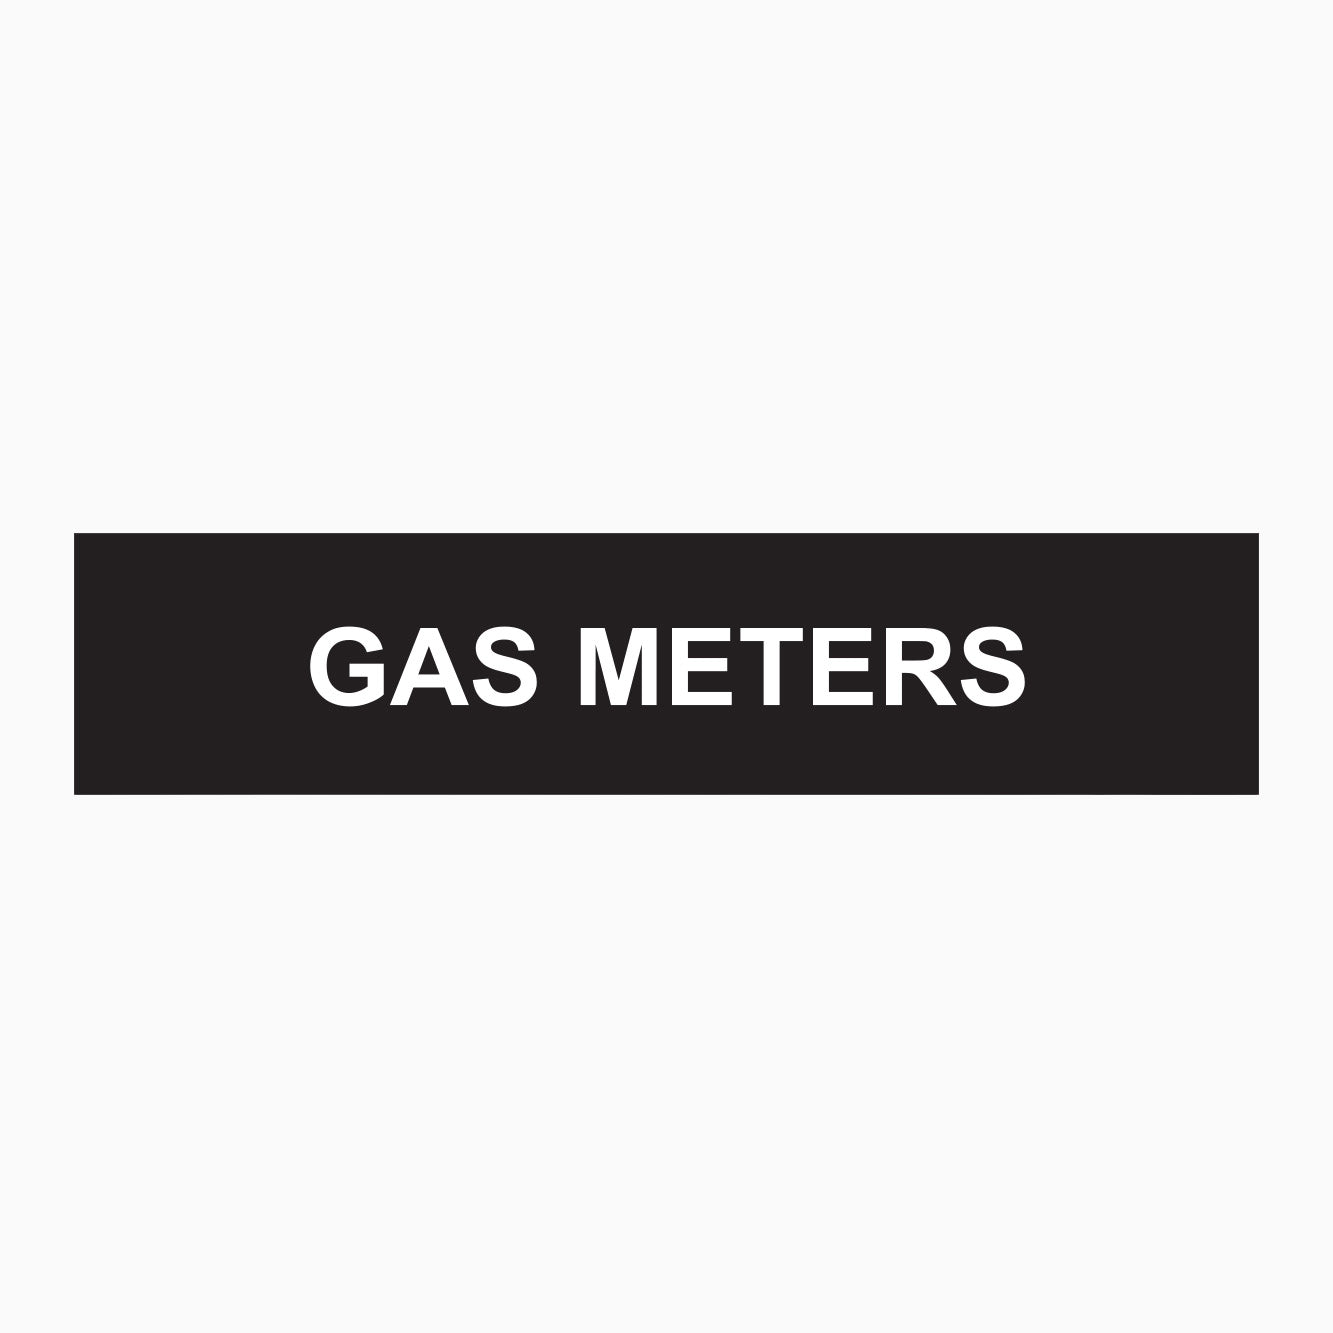 GAS METERS SIGN